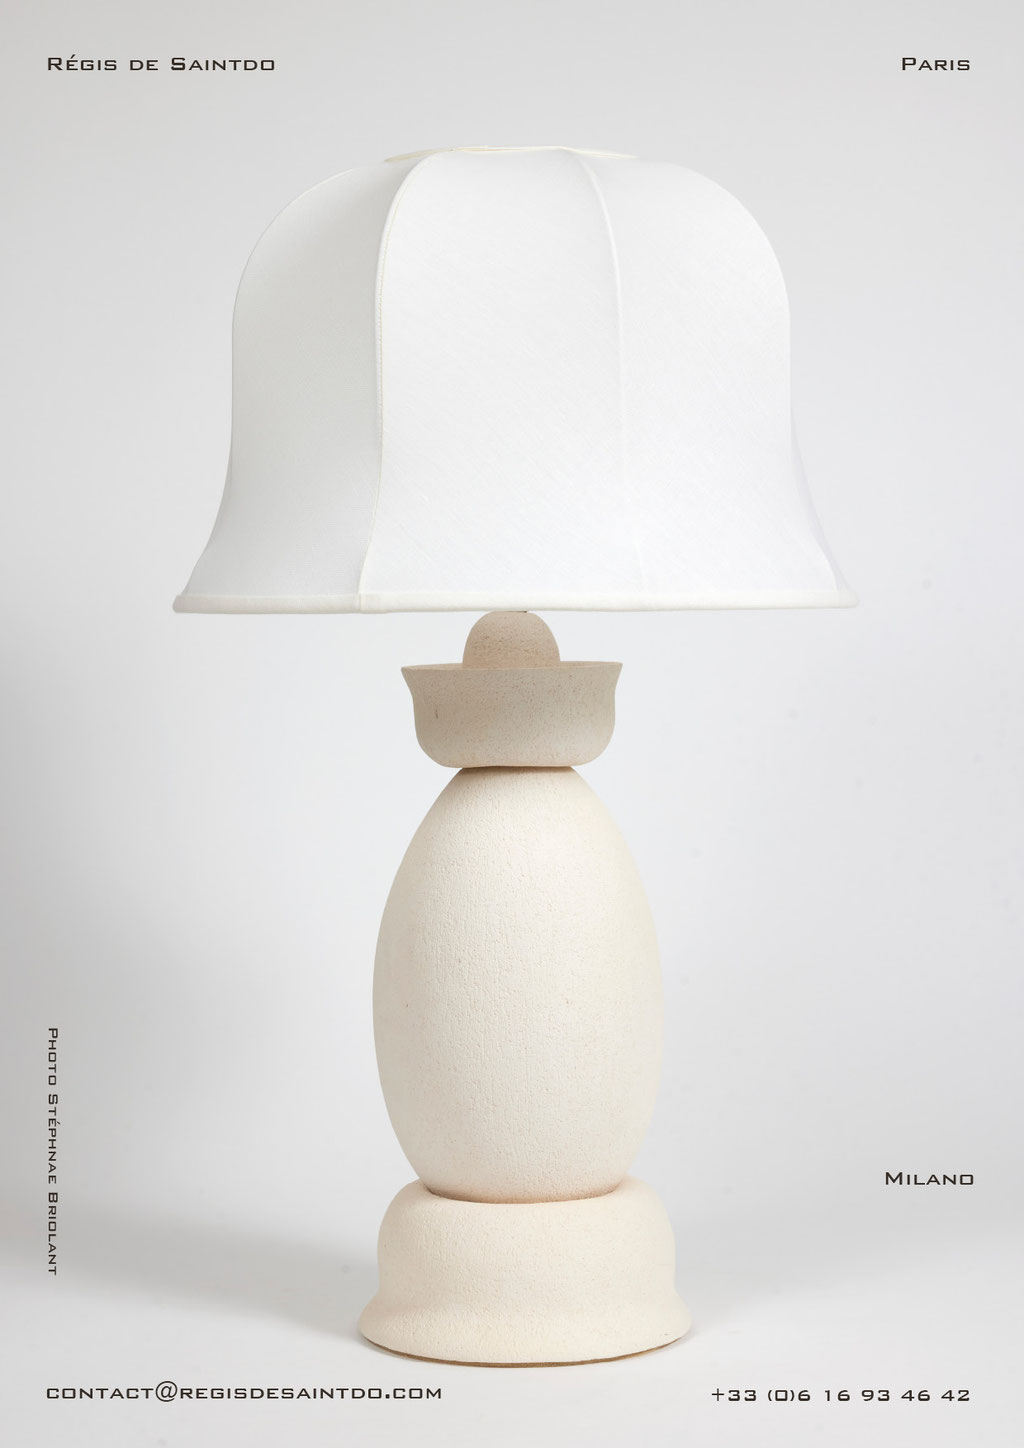 Lampe Milano-céramique blanche-fait main @Régis de Saintdo